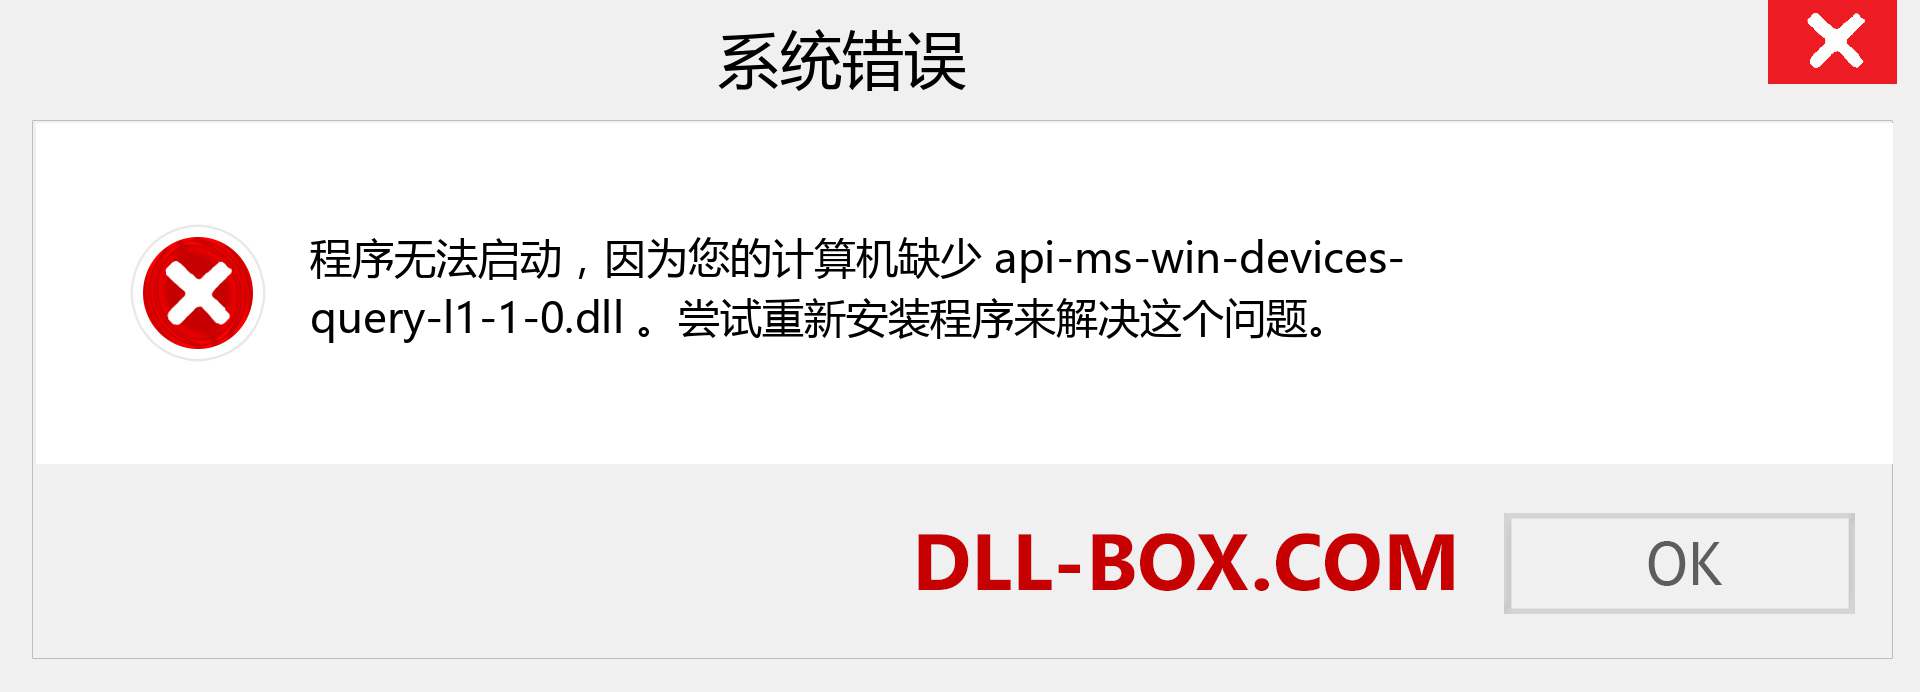 api-ms-win-devices-query-l1-1-0.dll 文件丢失？。 适用于 Windows 7、8、10 的下载 - 修复 Windows、照片、图像上的 api-ms-win-devices-query-l1-1-0 dll 丢失错误